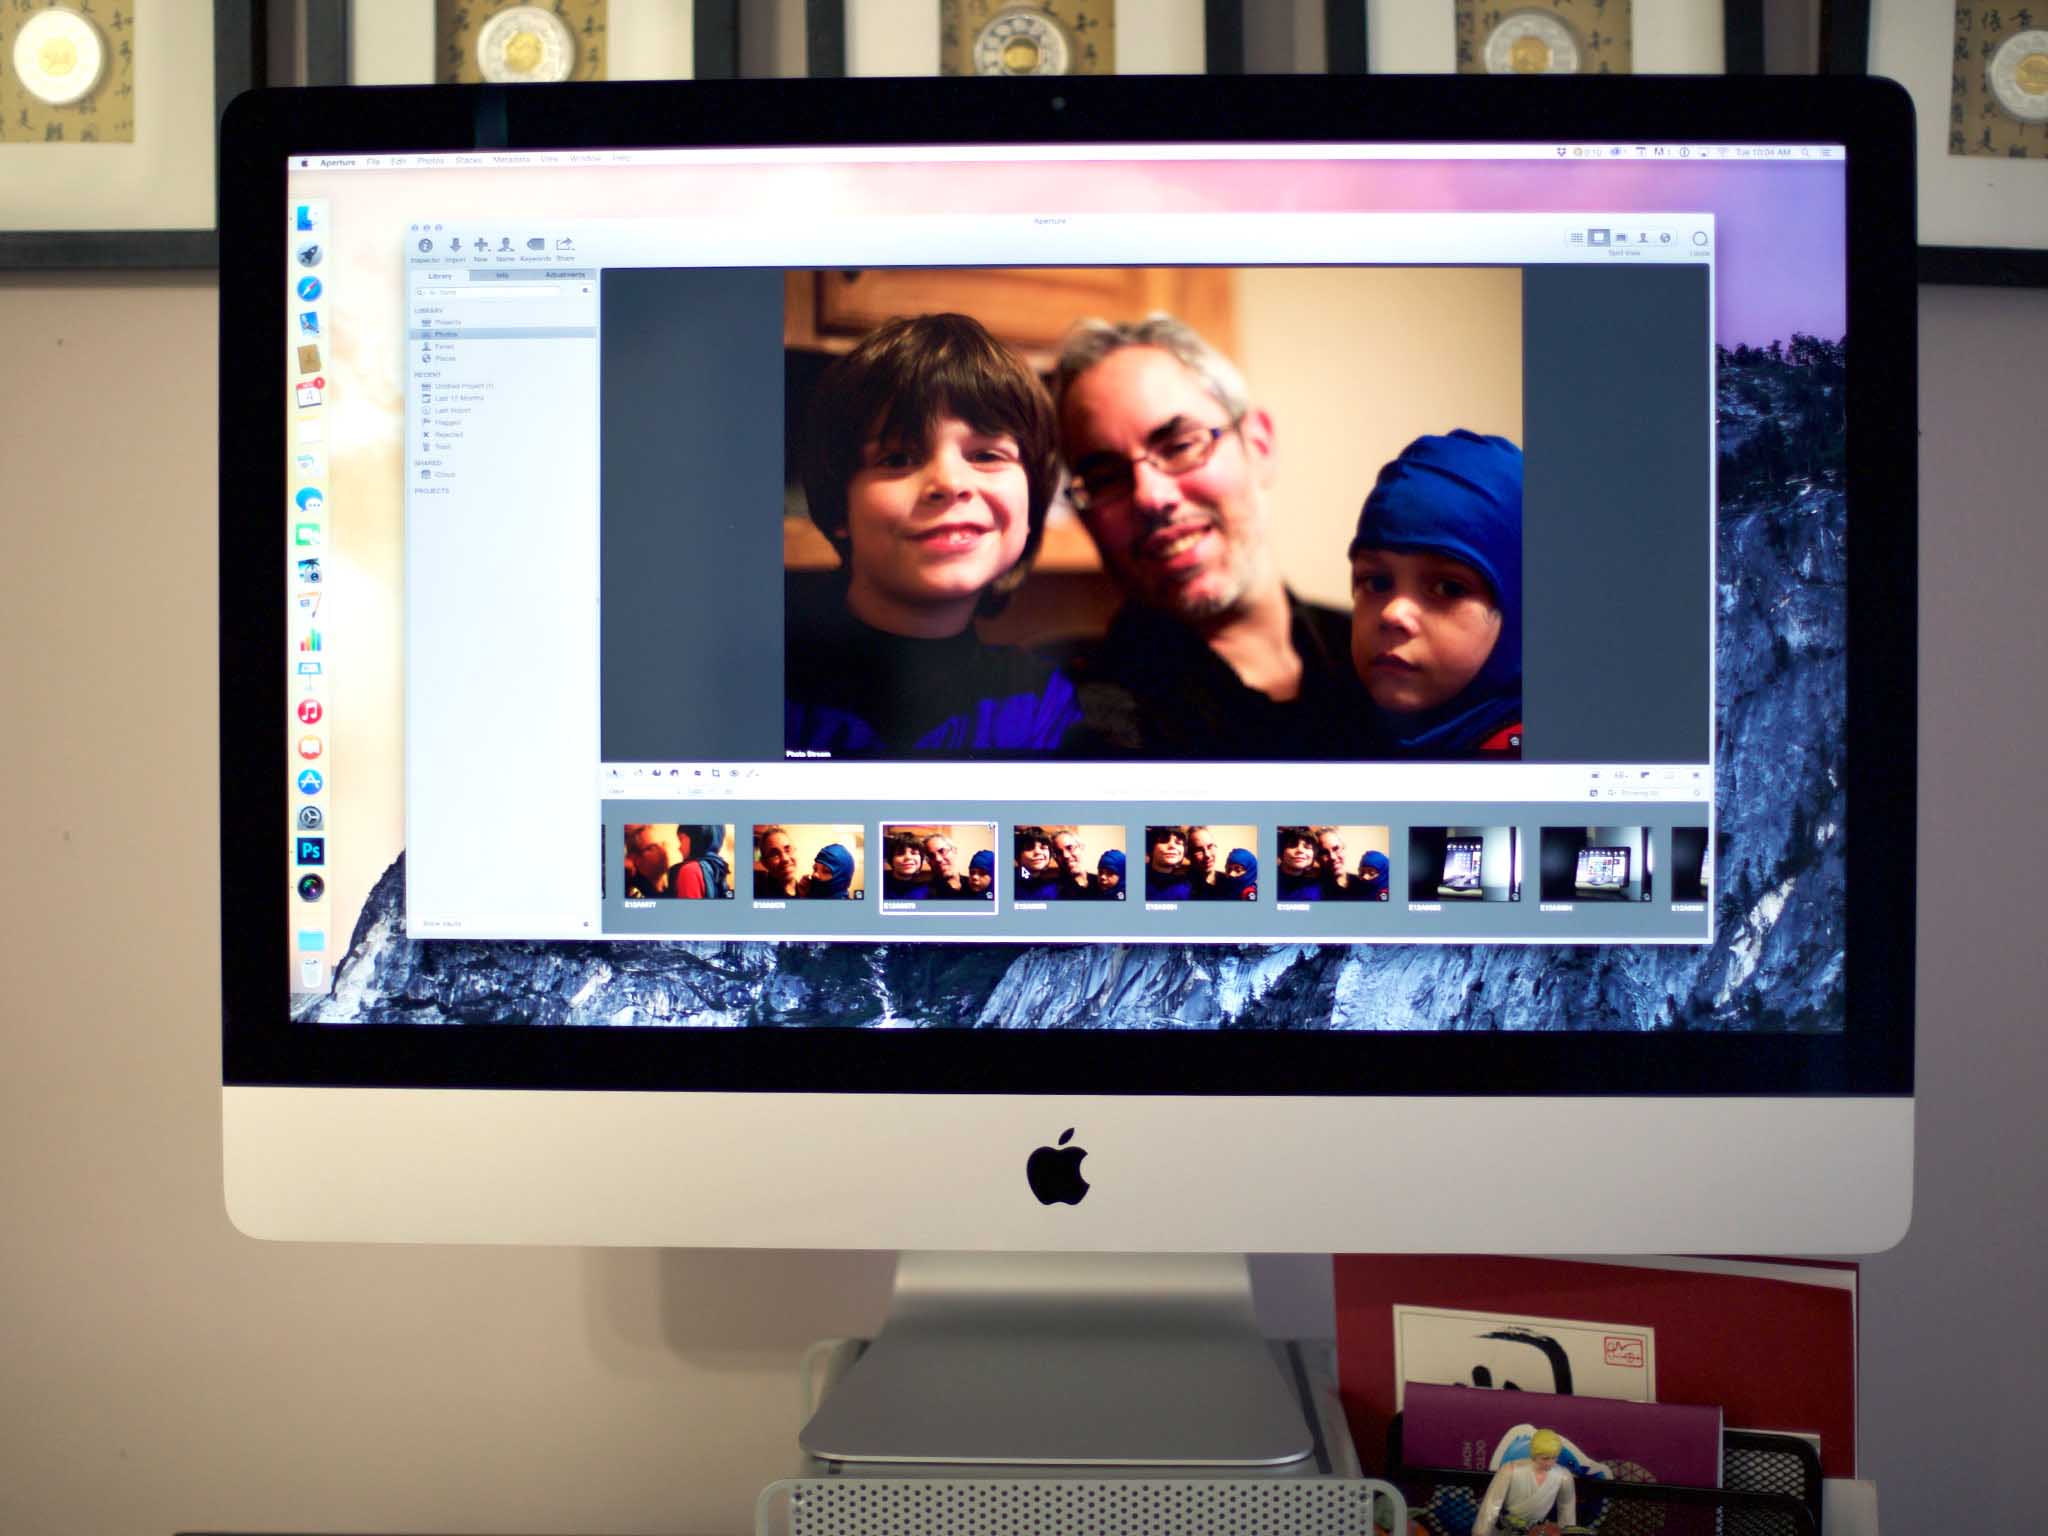 macbook retina display pixels per inch